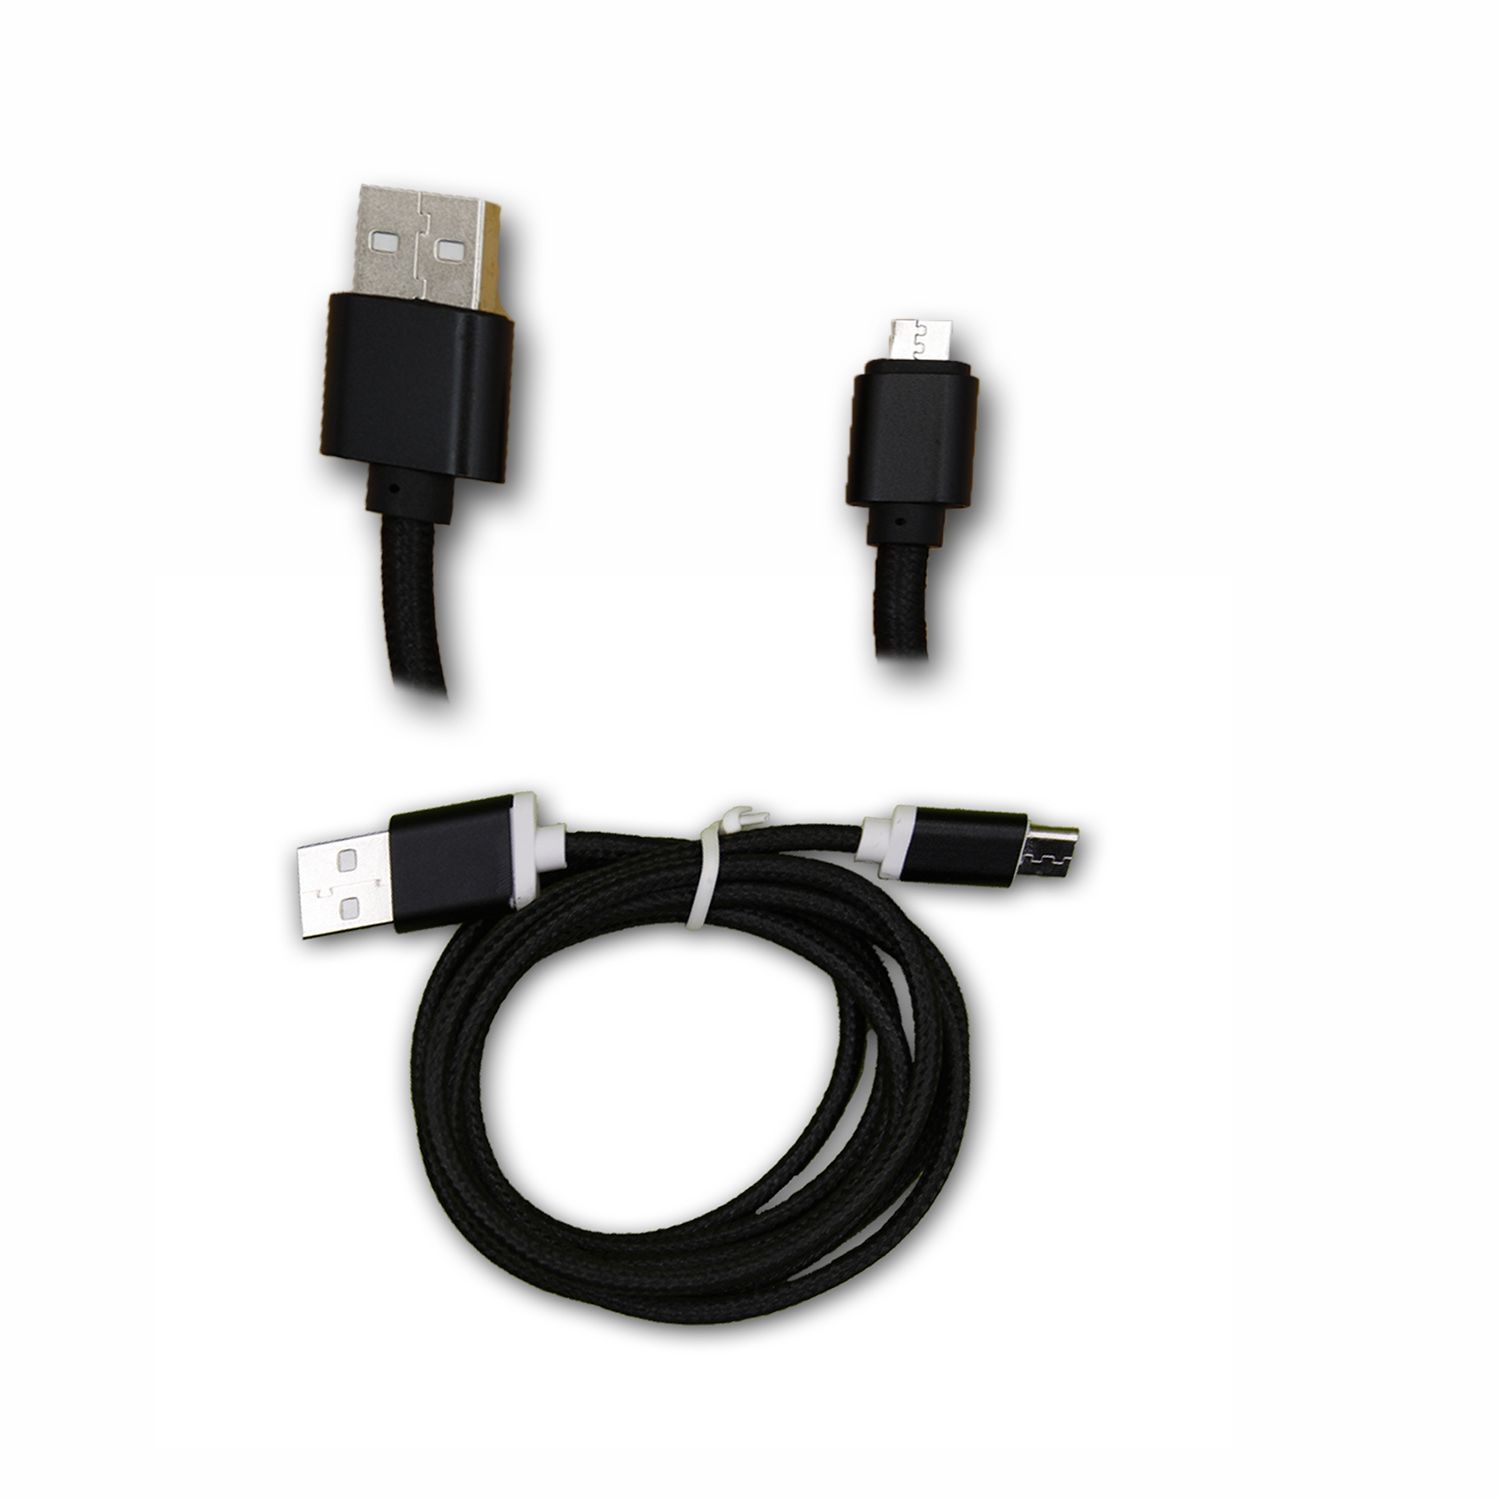 Huawei Y5 2 Câble Data NOIR 1M en nylon tressé ultra Résistant (garantie 12 mois) Micro USB pour charge, synchronisation et transfert de données by PH26 ®